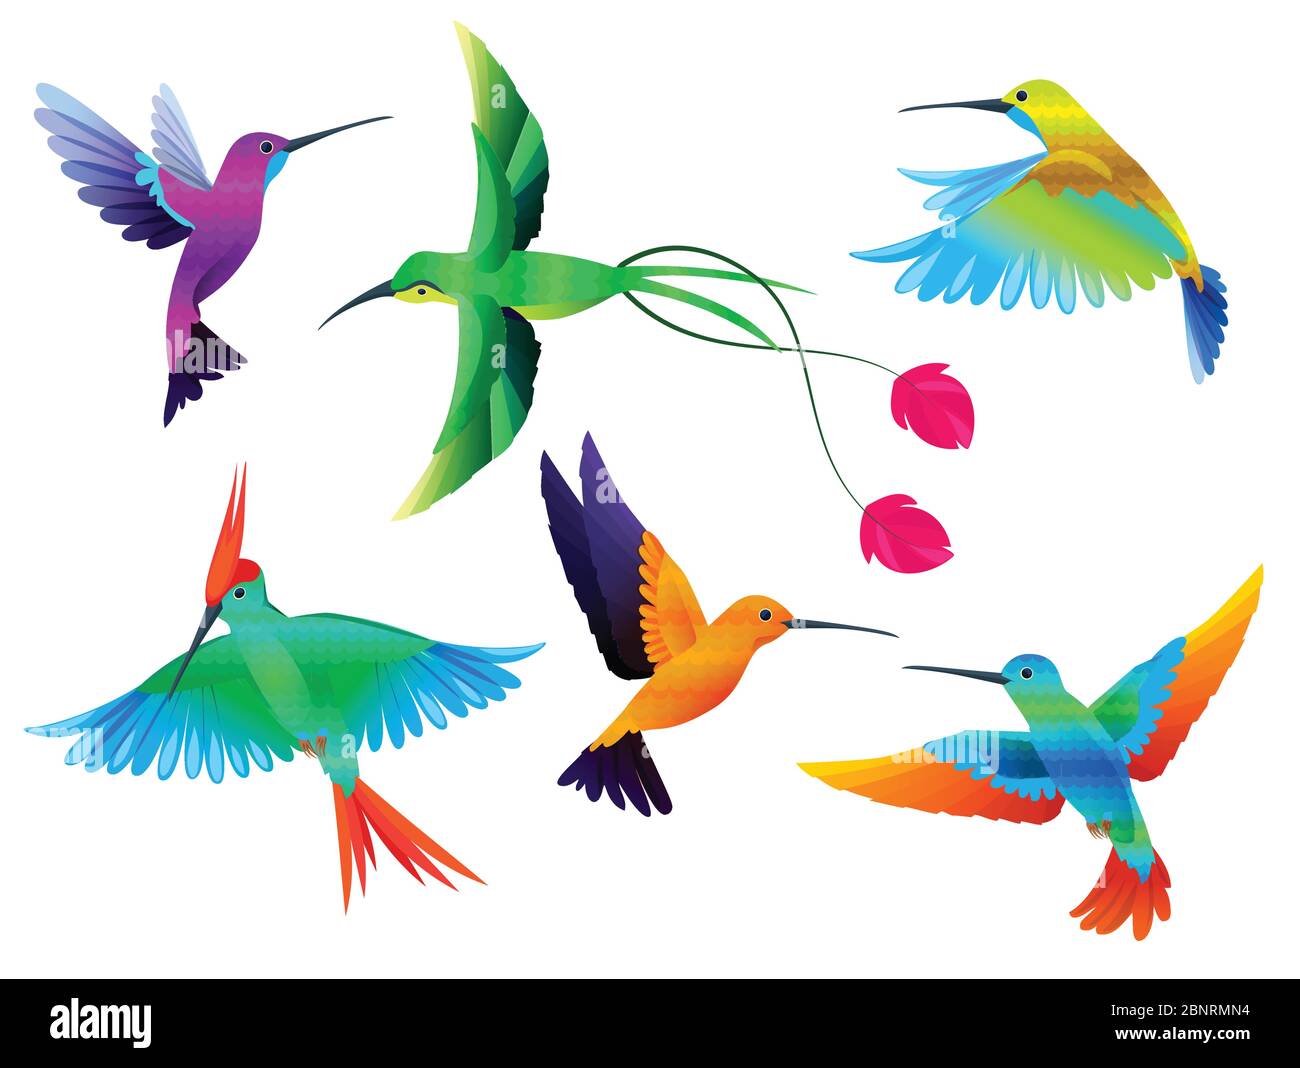 Oiseaux tropicaux. Colibris toucan couleur perroquet oiseaux exotiques zoo caricature collection de vecteur Illustration de Vecteur